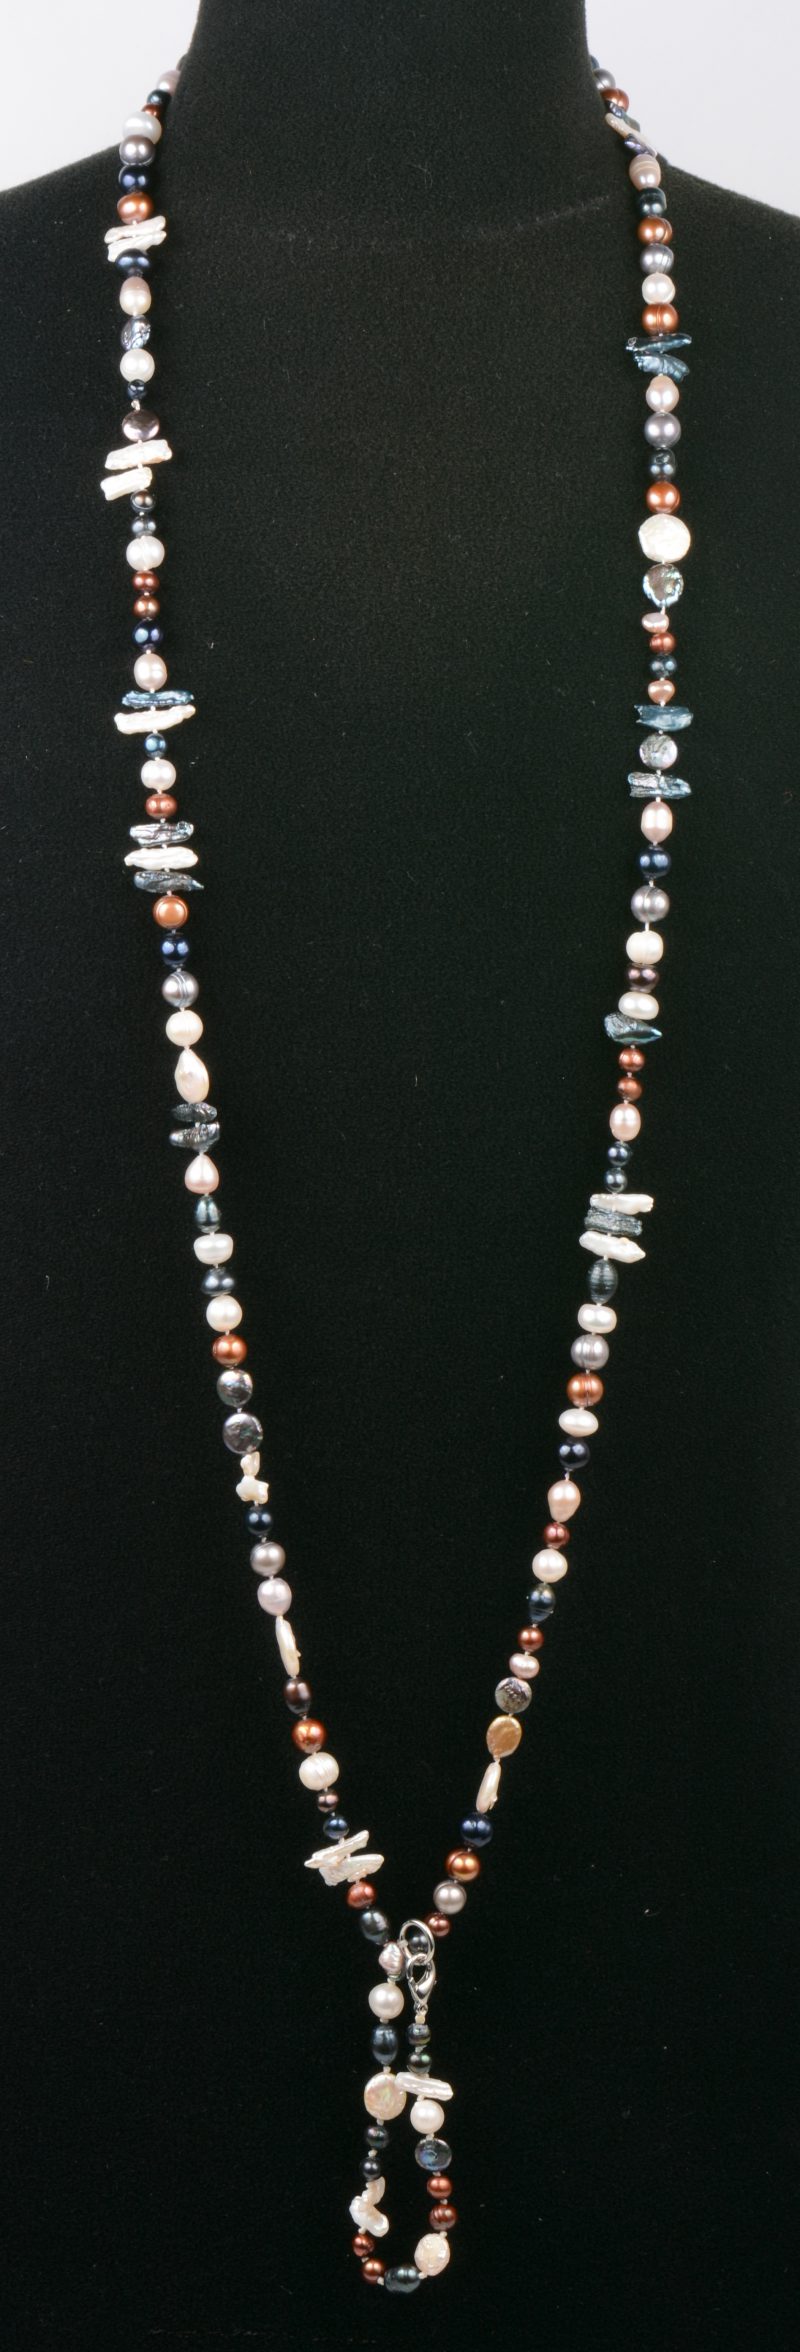 Een halssnoer van verschillende kleuren parels met bijpassende armband en zilveren slot.